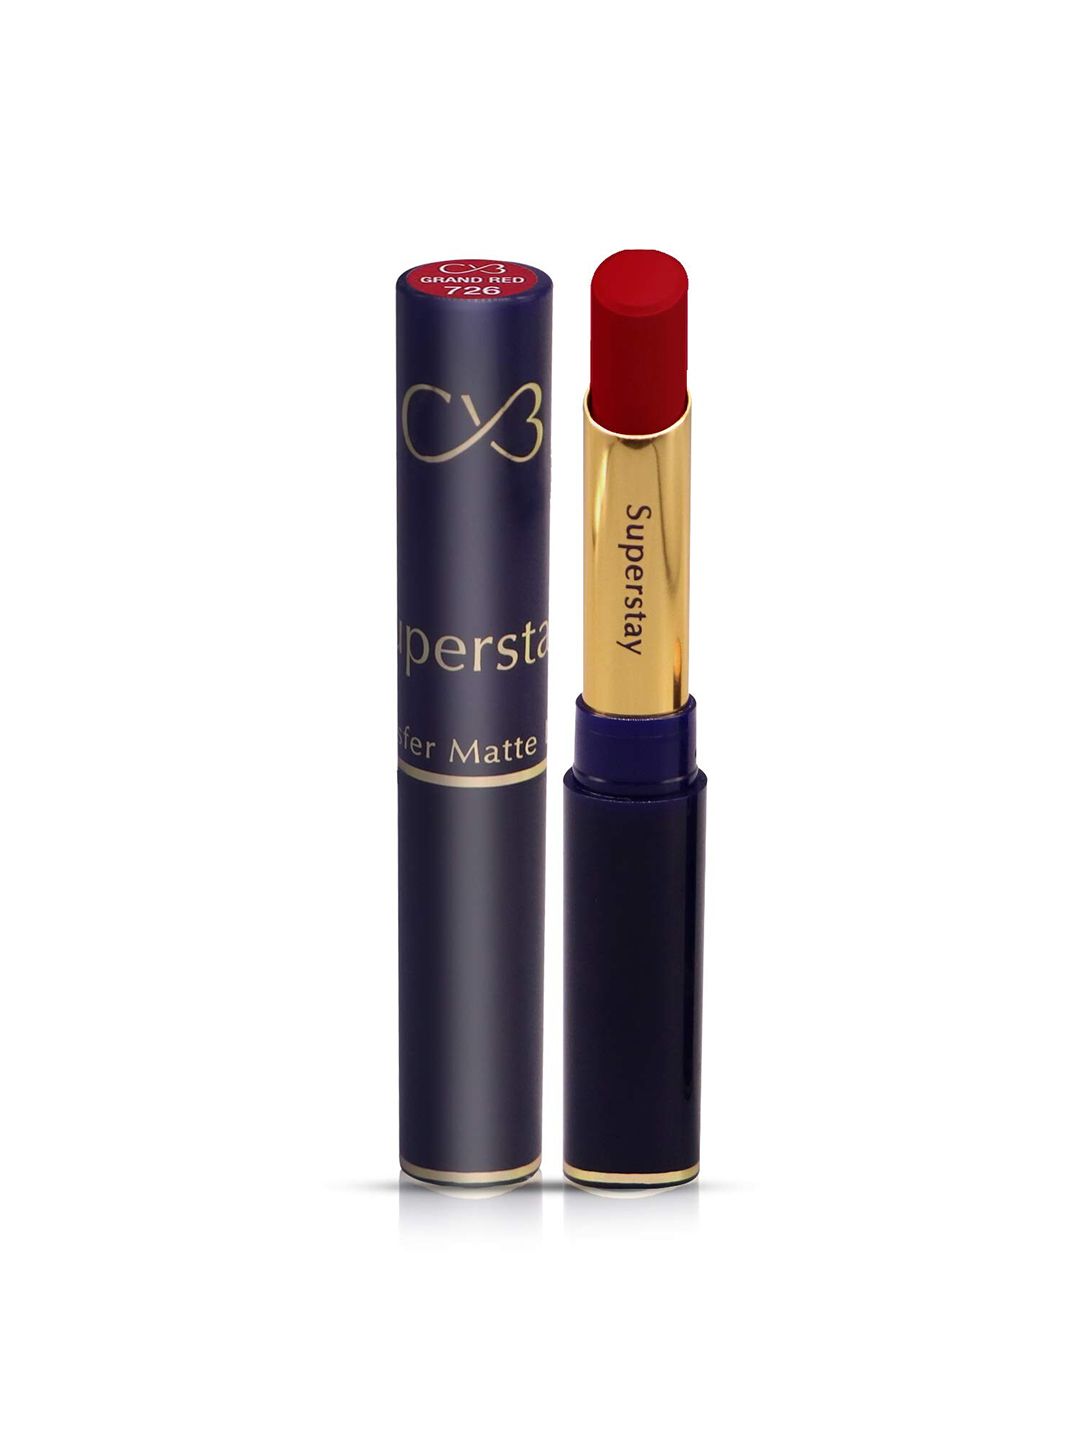 CVB Super Stay Non-Transfer Matte Lipstick 3.5 g - Grand Red 726 Price in India